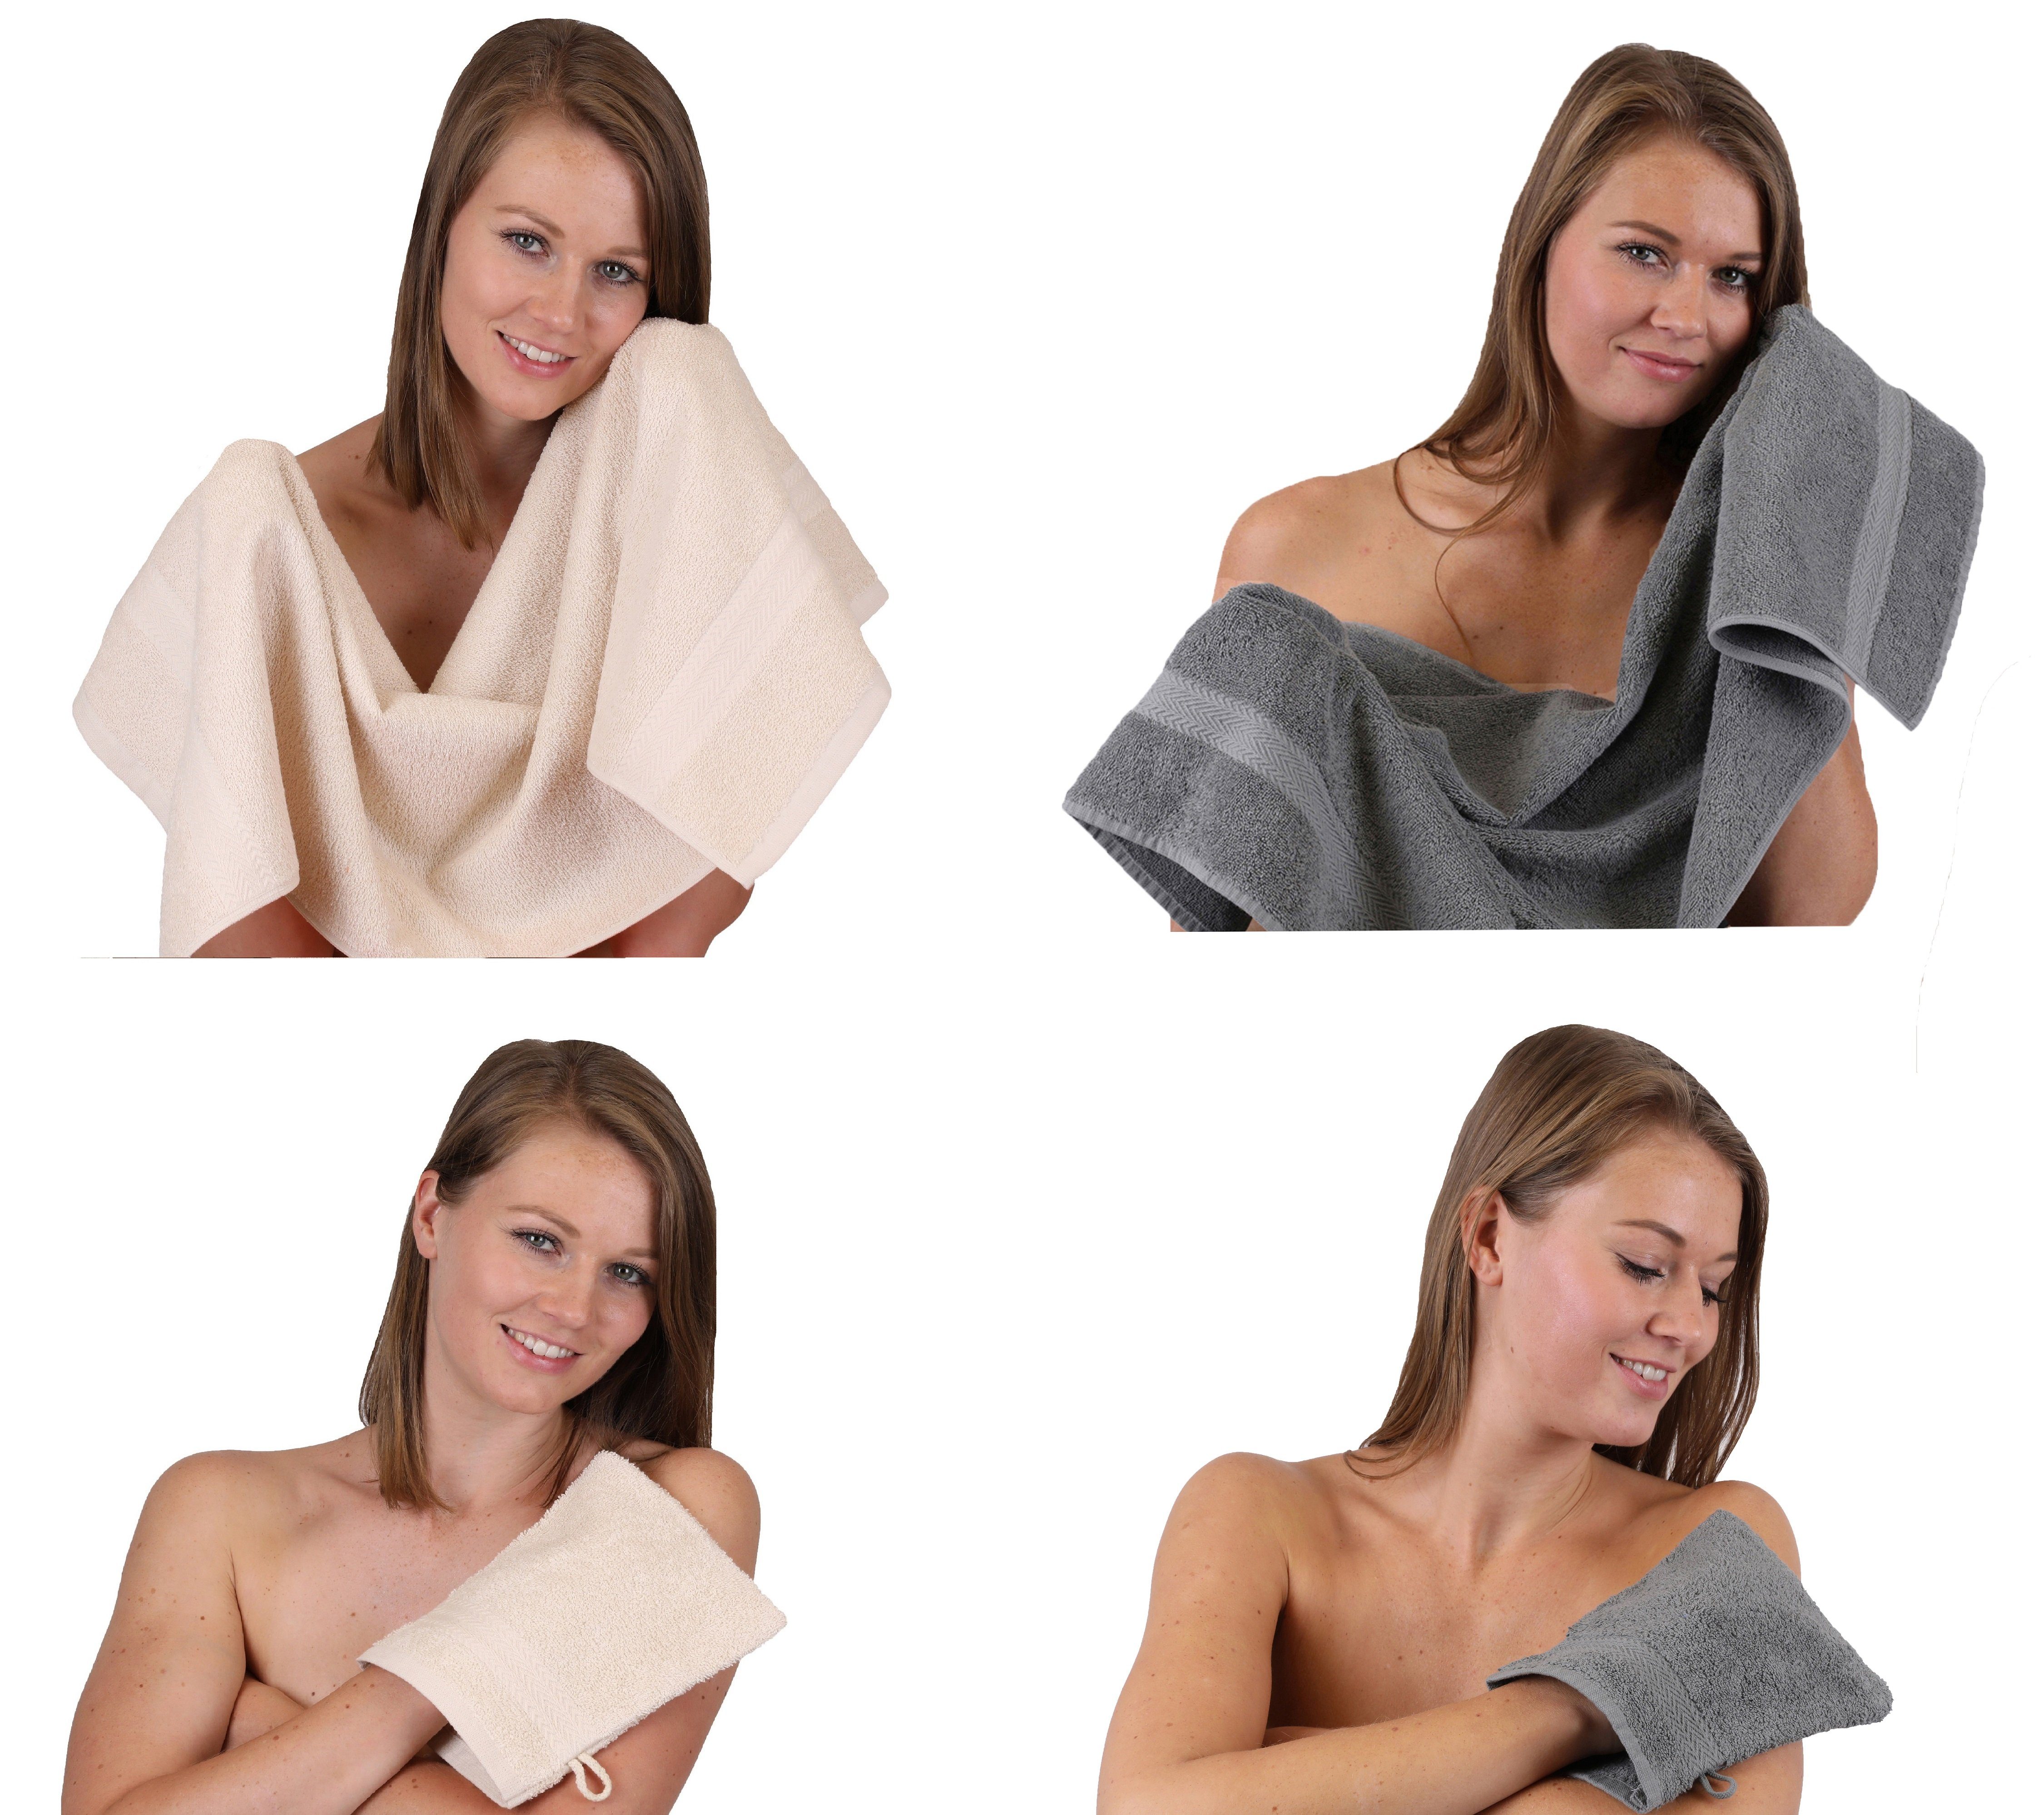 Betz Handtuch Set Handtuch 4 TLG. 100% Baumwolle Set grau 100% anthrazit Waschhandschuhe, - 2 Baumwolle 2 Handtücher Happy sand Pack